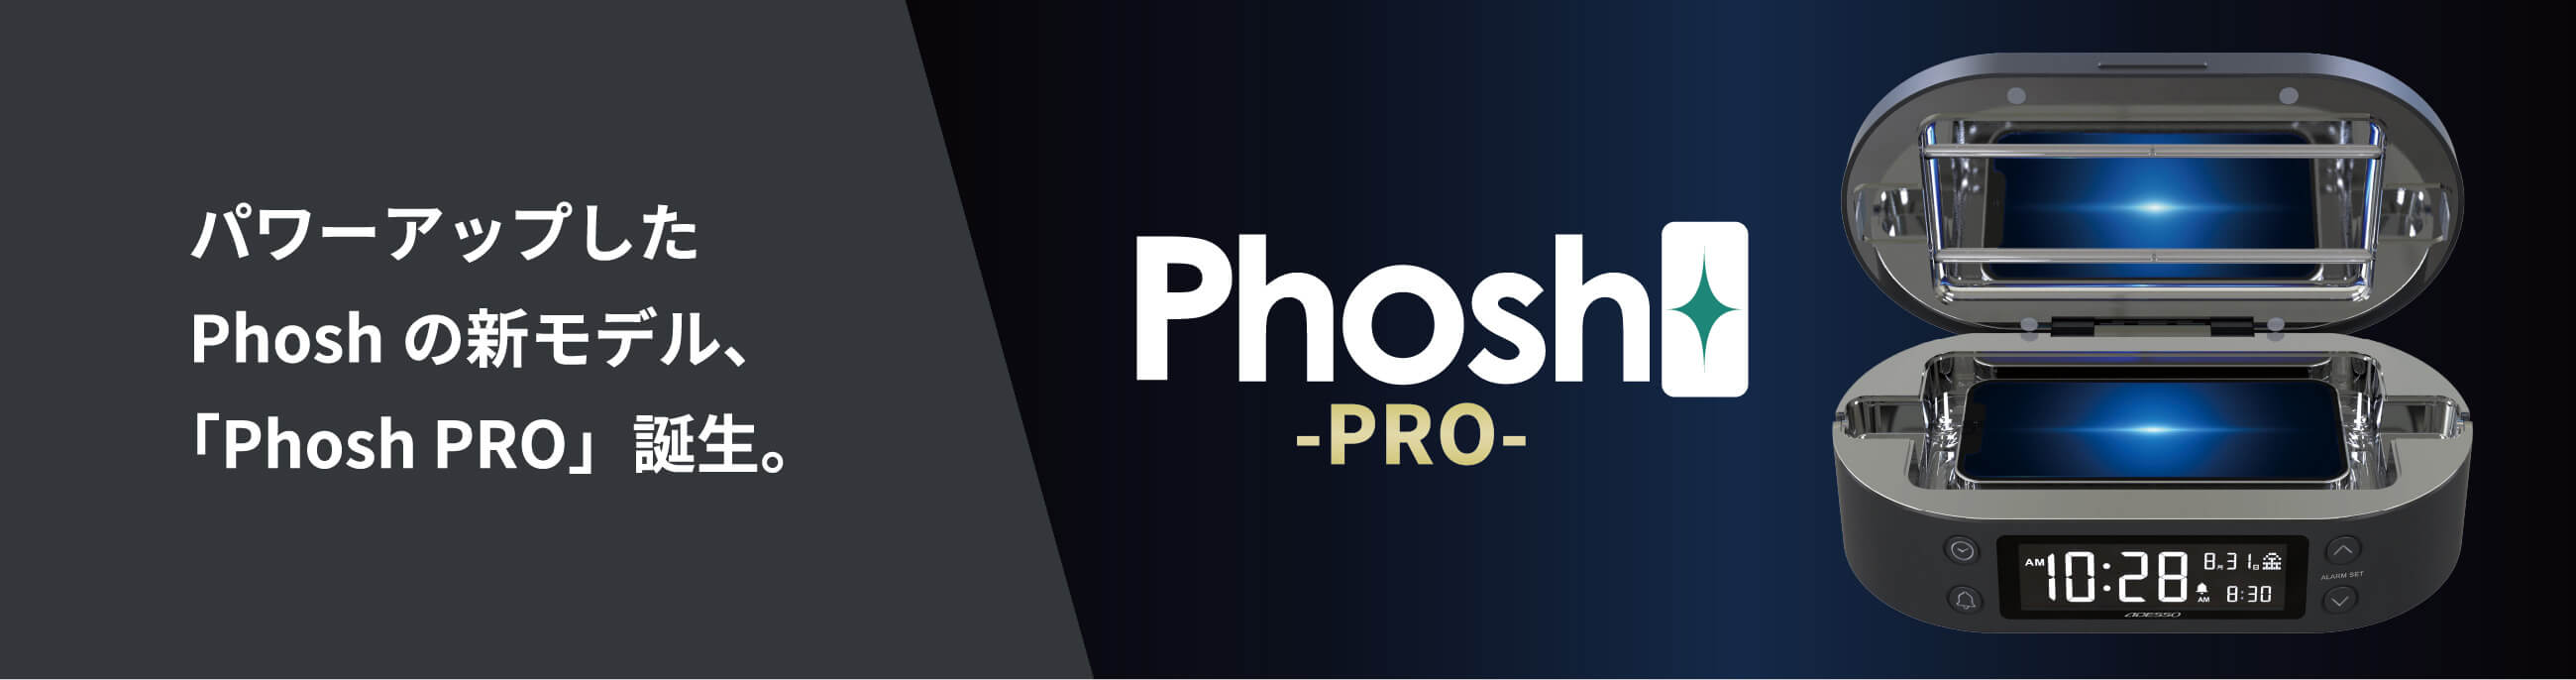 パワーアップしたPhoshの新モデル、「Phosh PRO」誕生。